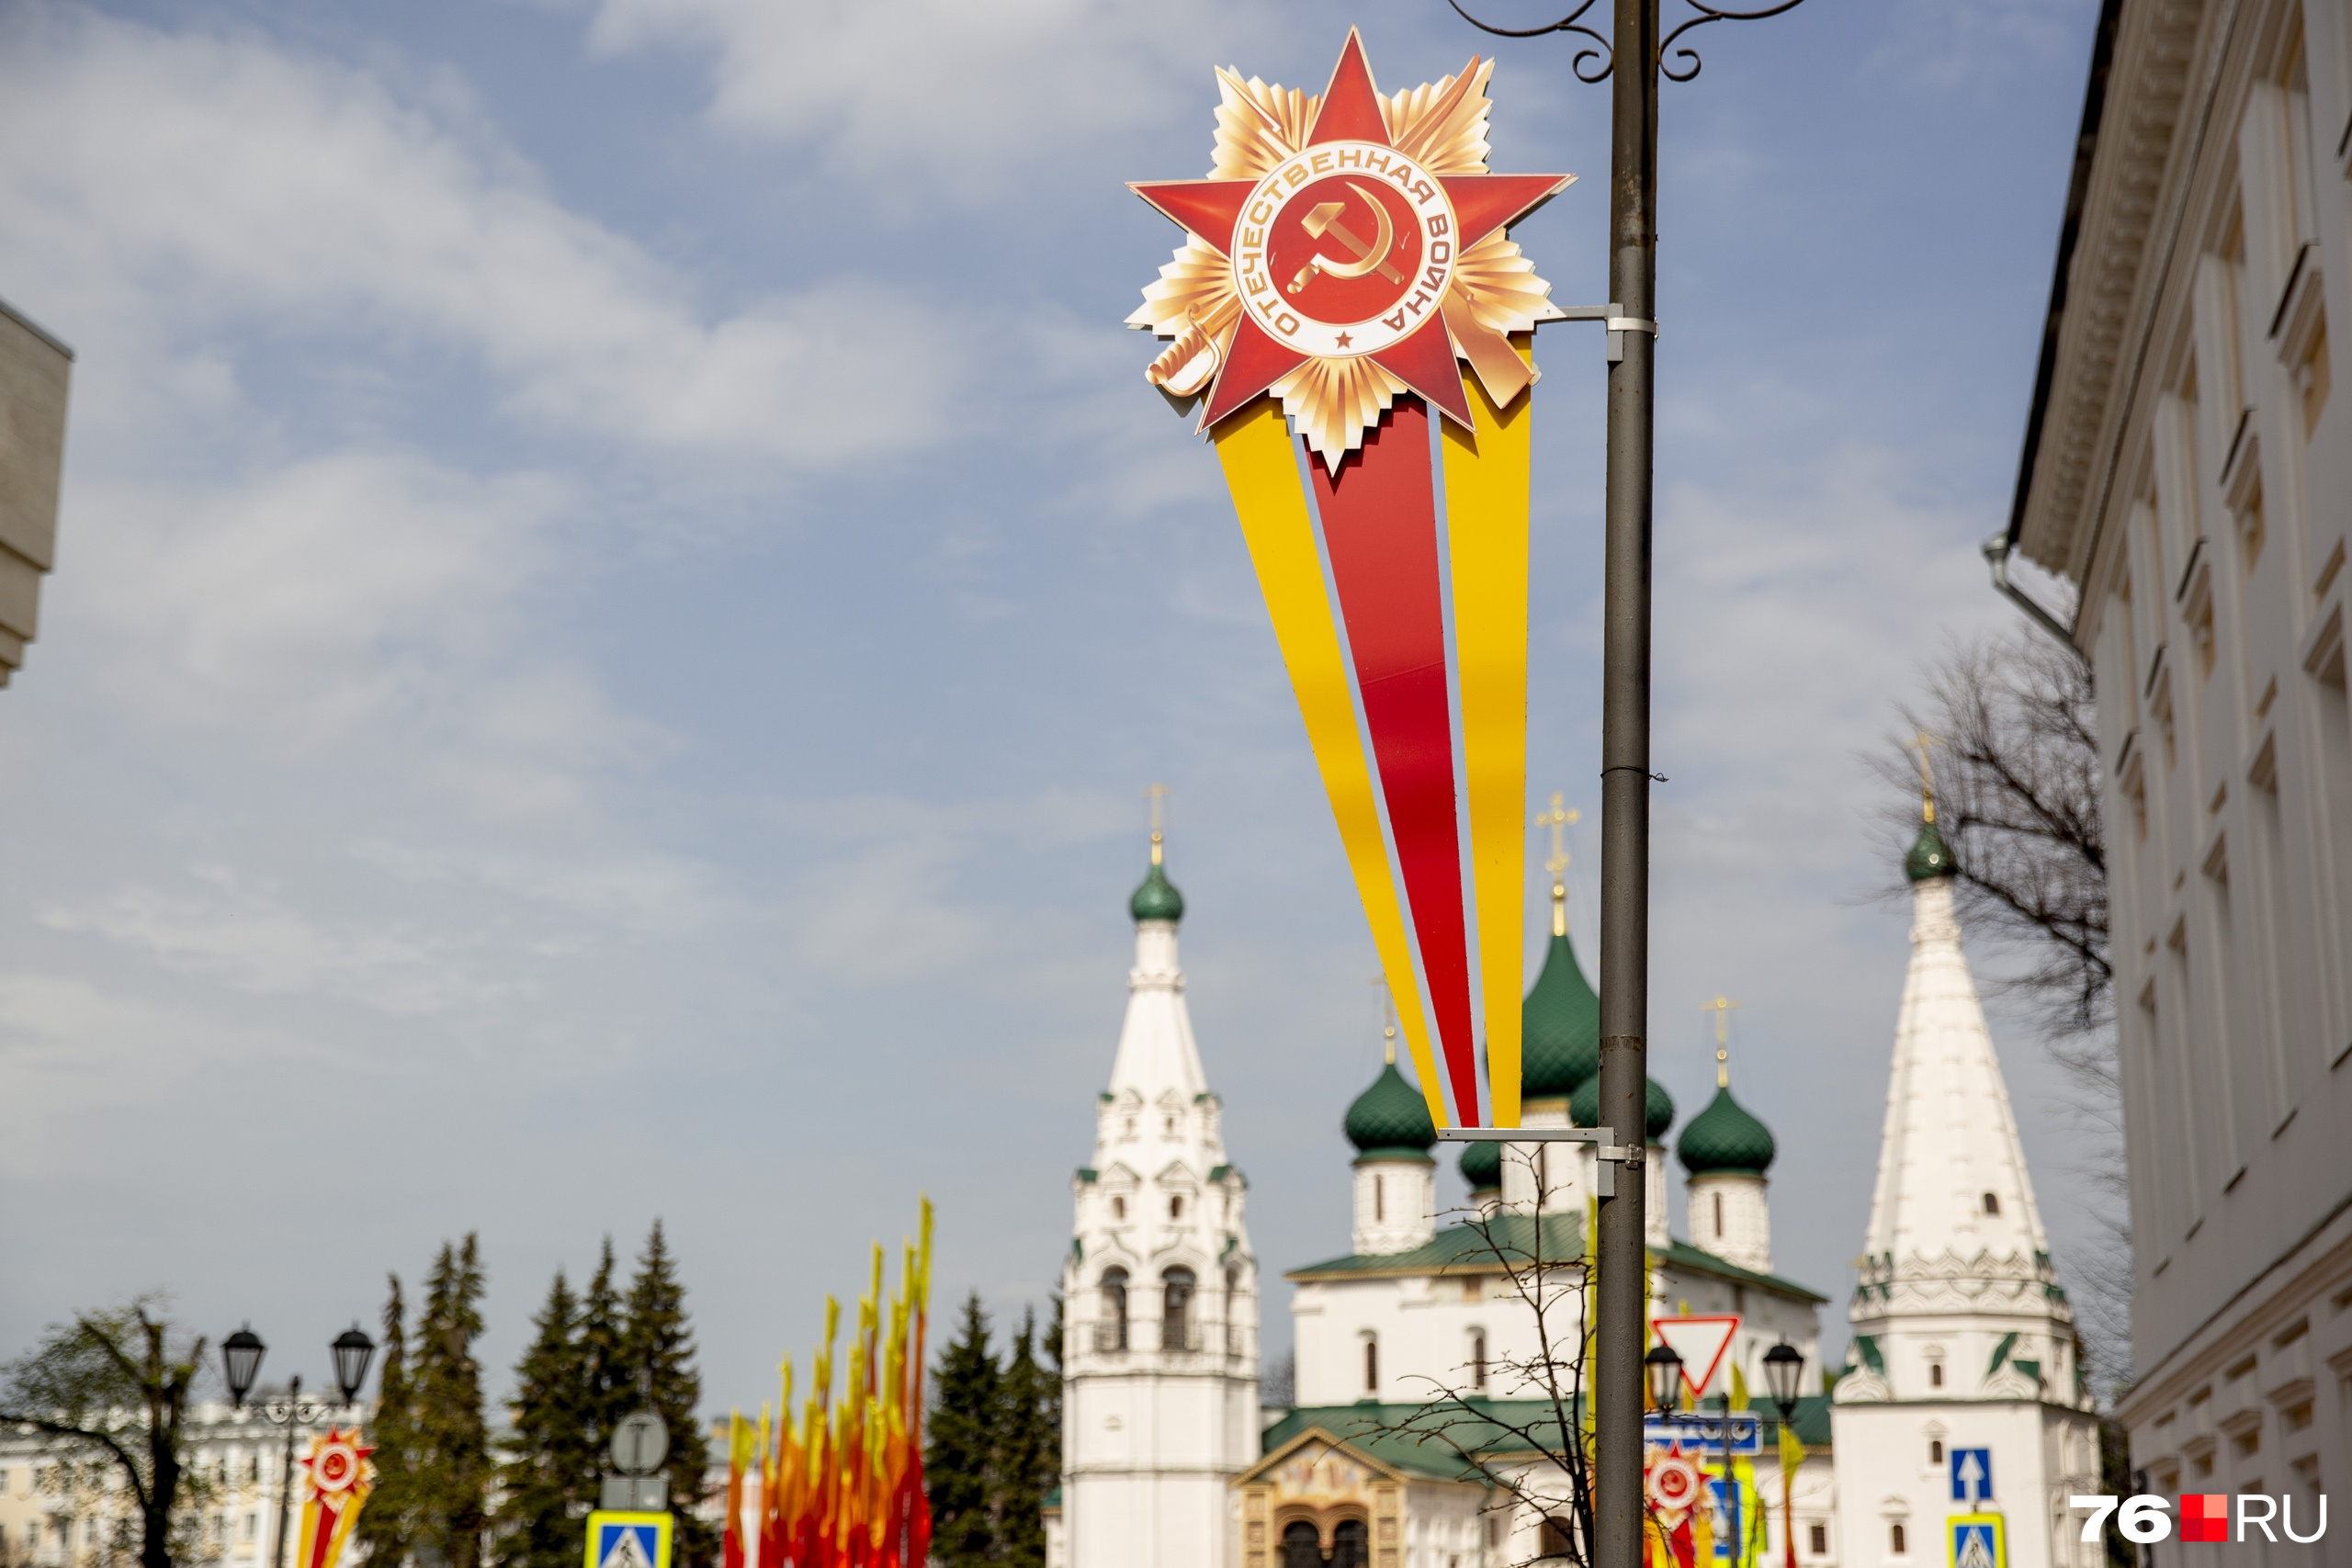 Почему ко Дню Победы Ярославль украсили желто-оранжево-красными флагами:  ответ мэрии - 11 мая 2022 - 76.ru